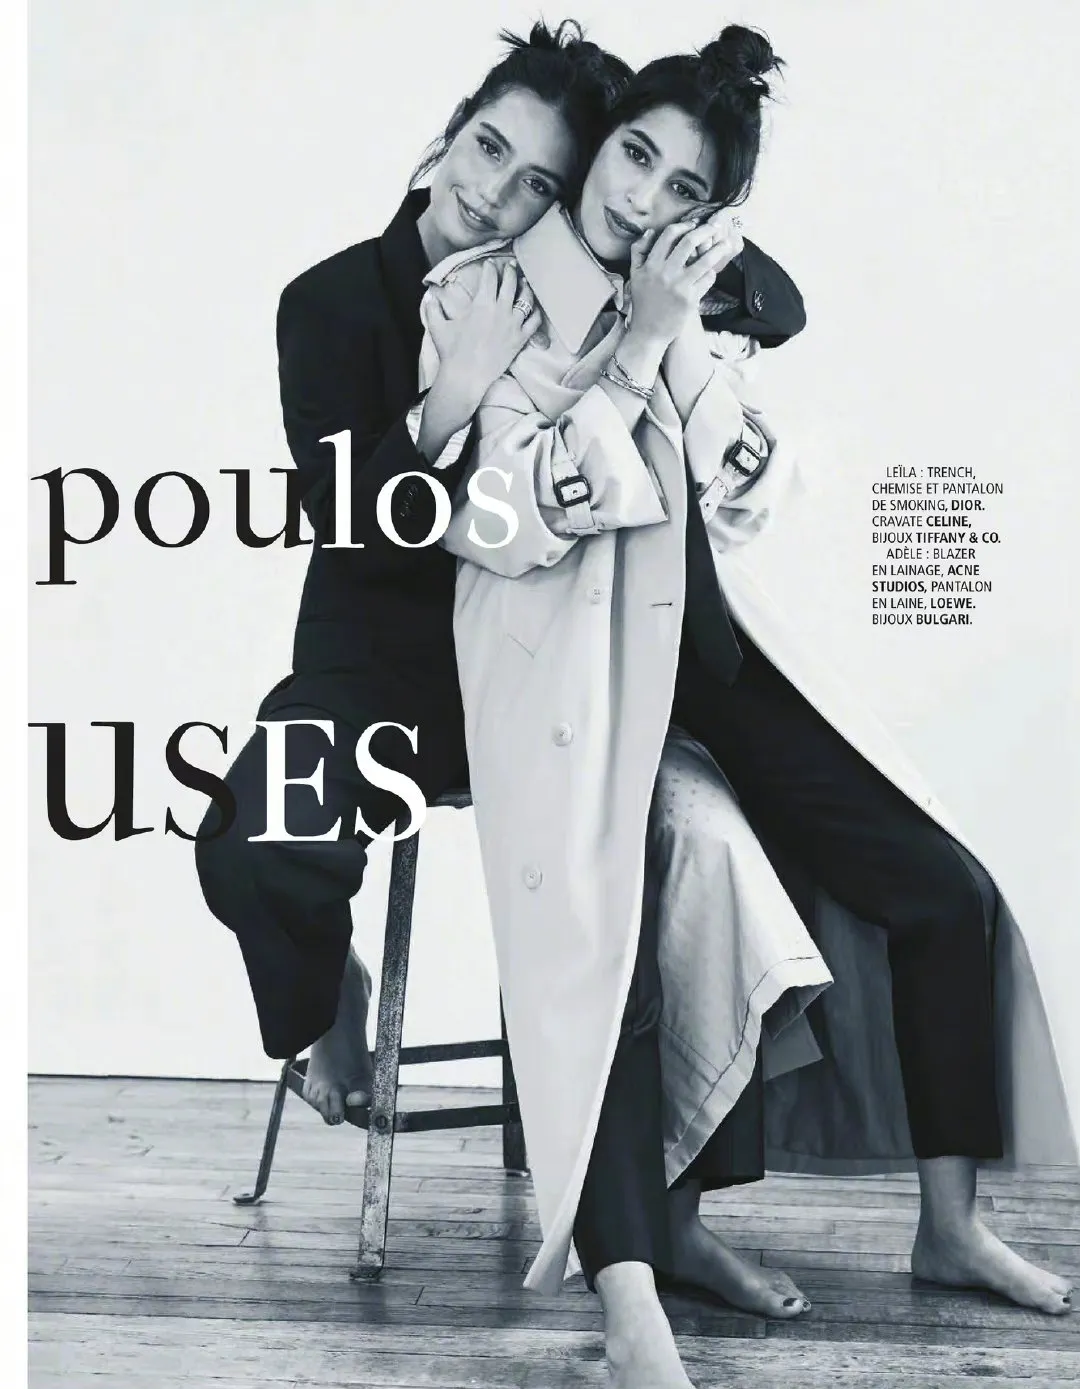 Adèle Exarchopoulos and Leila Bekhti, 'Madame Figaro' Magazine September Photo | FMV6